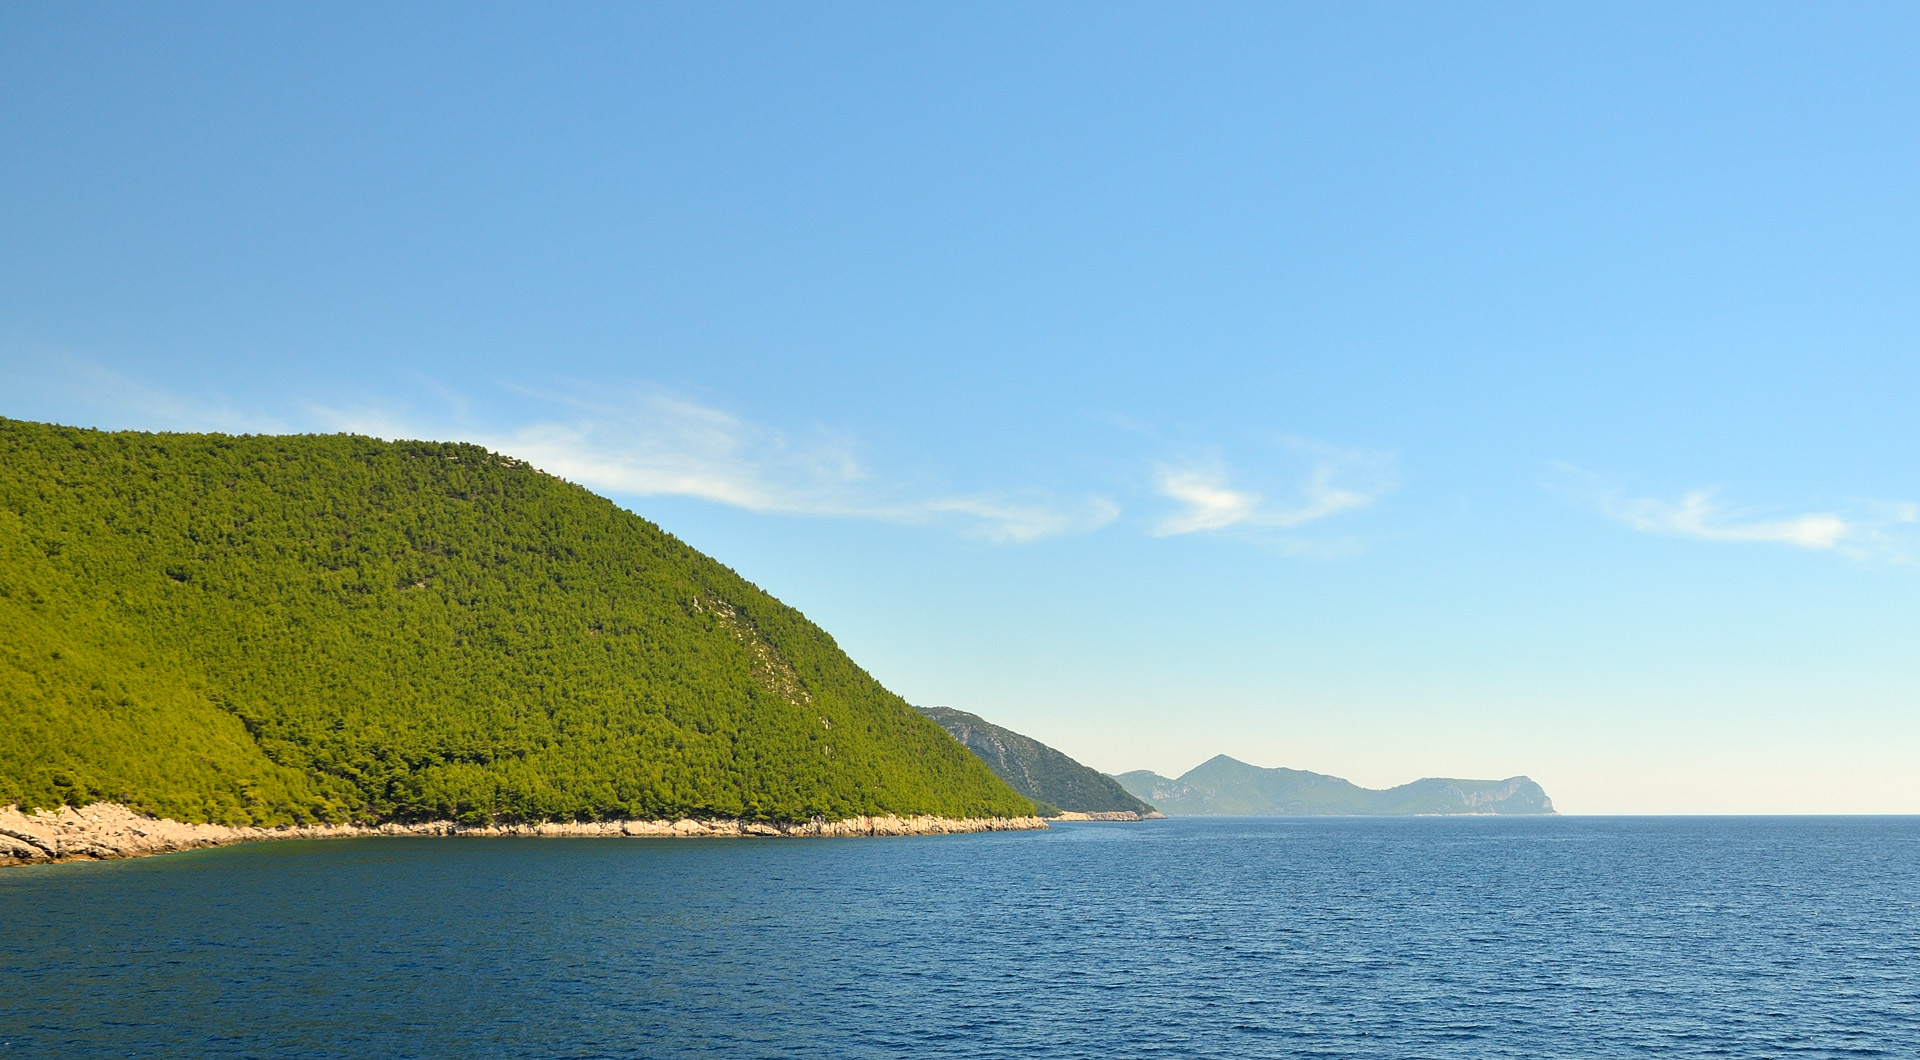 Nach gut 30 Minuten legen wir in Sobra im Südosten der Insel Mljet an...
Die Insel Mljet, auch „Odysseus Insel“ genannt, befindet sich etwa 30 km nordwestlich von Dubrovnik. Die Insel hat eine Fläche von etwa 100 km². Mit einem Waldanteil von 90 Prozent ist sie eine der am stärksten bewaldeten Inseln im Mittelmeer.